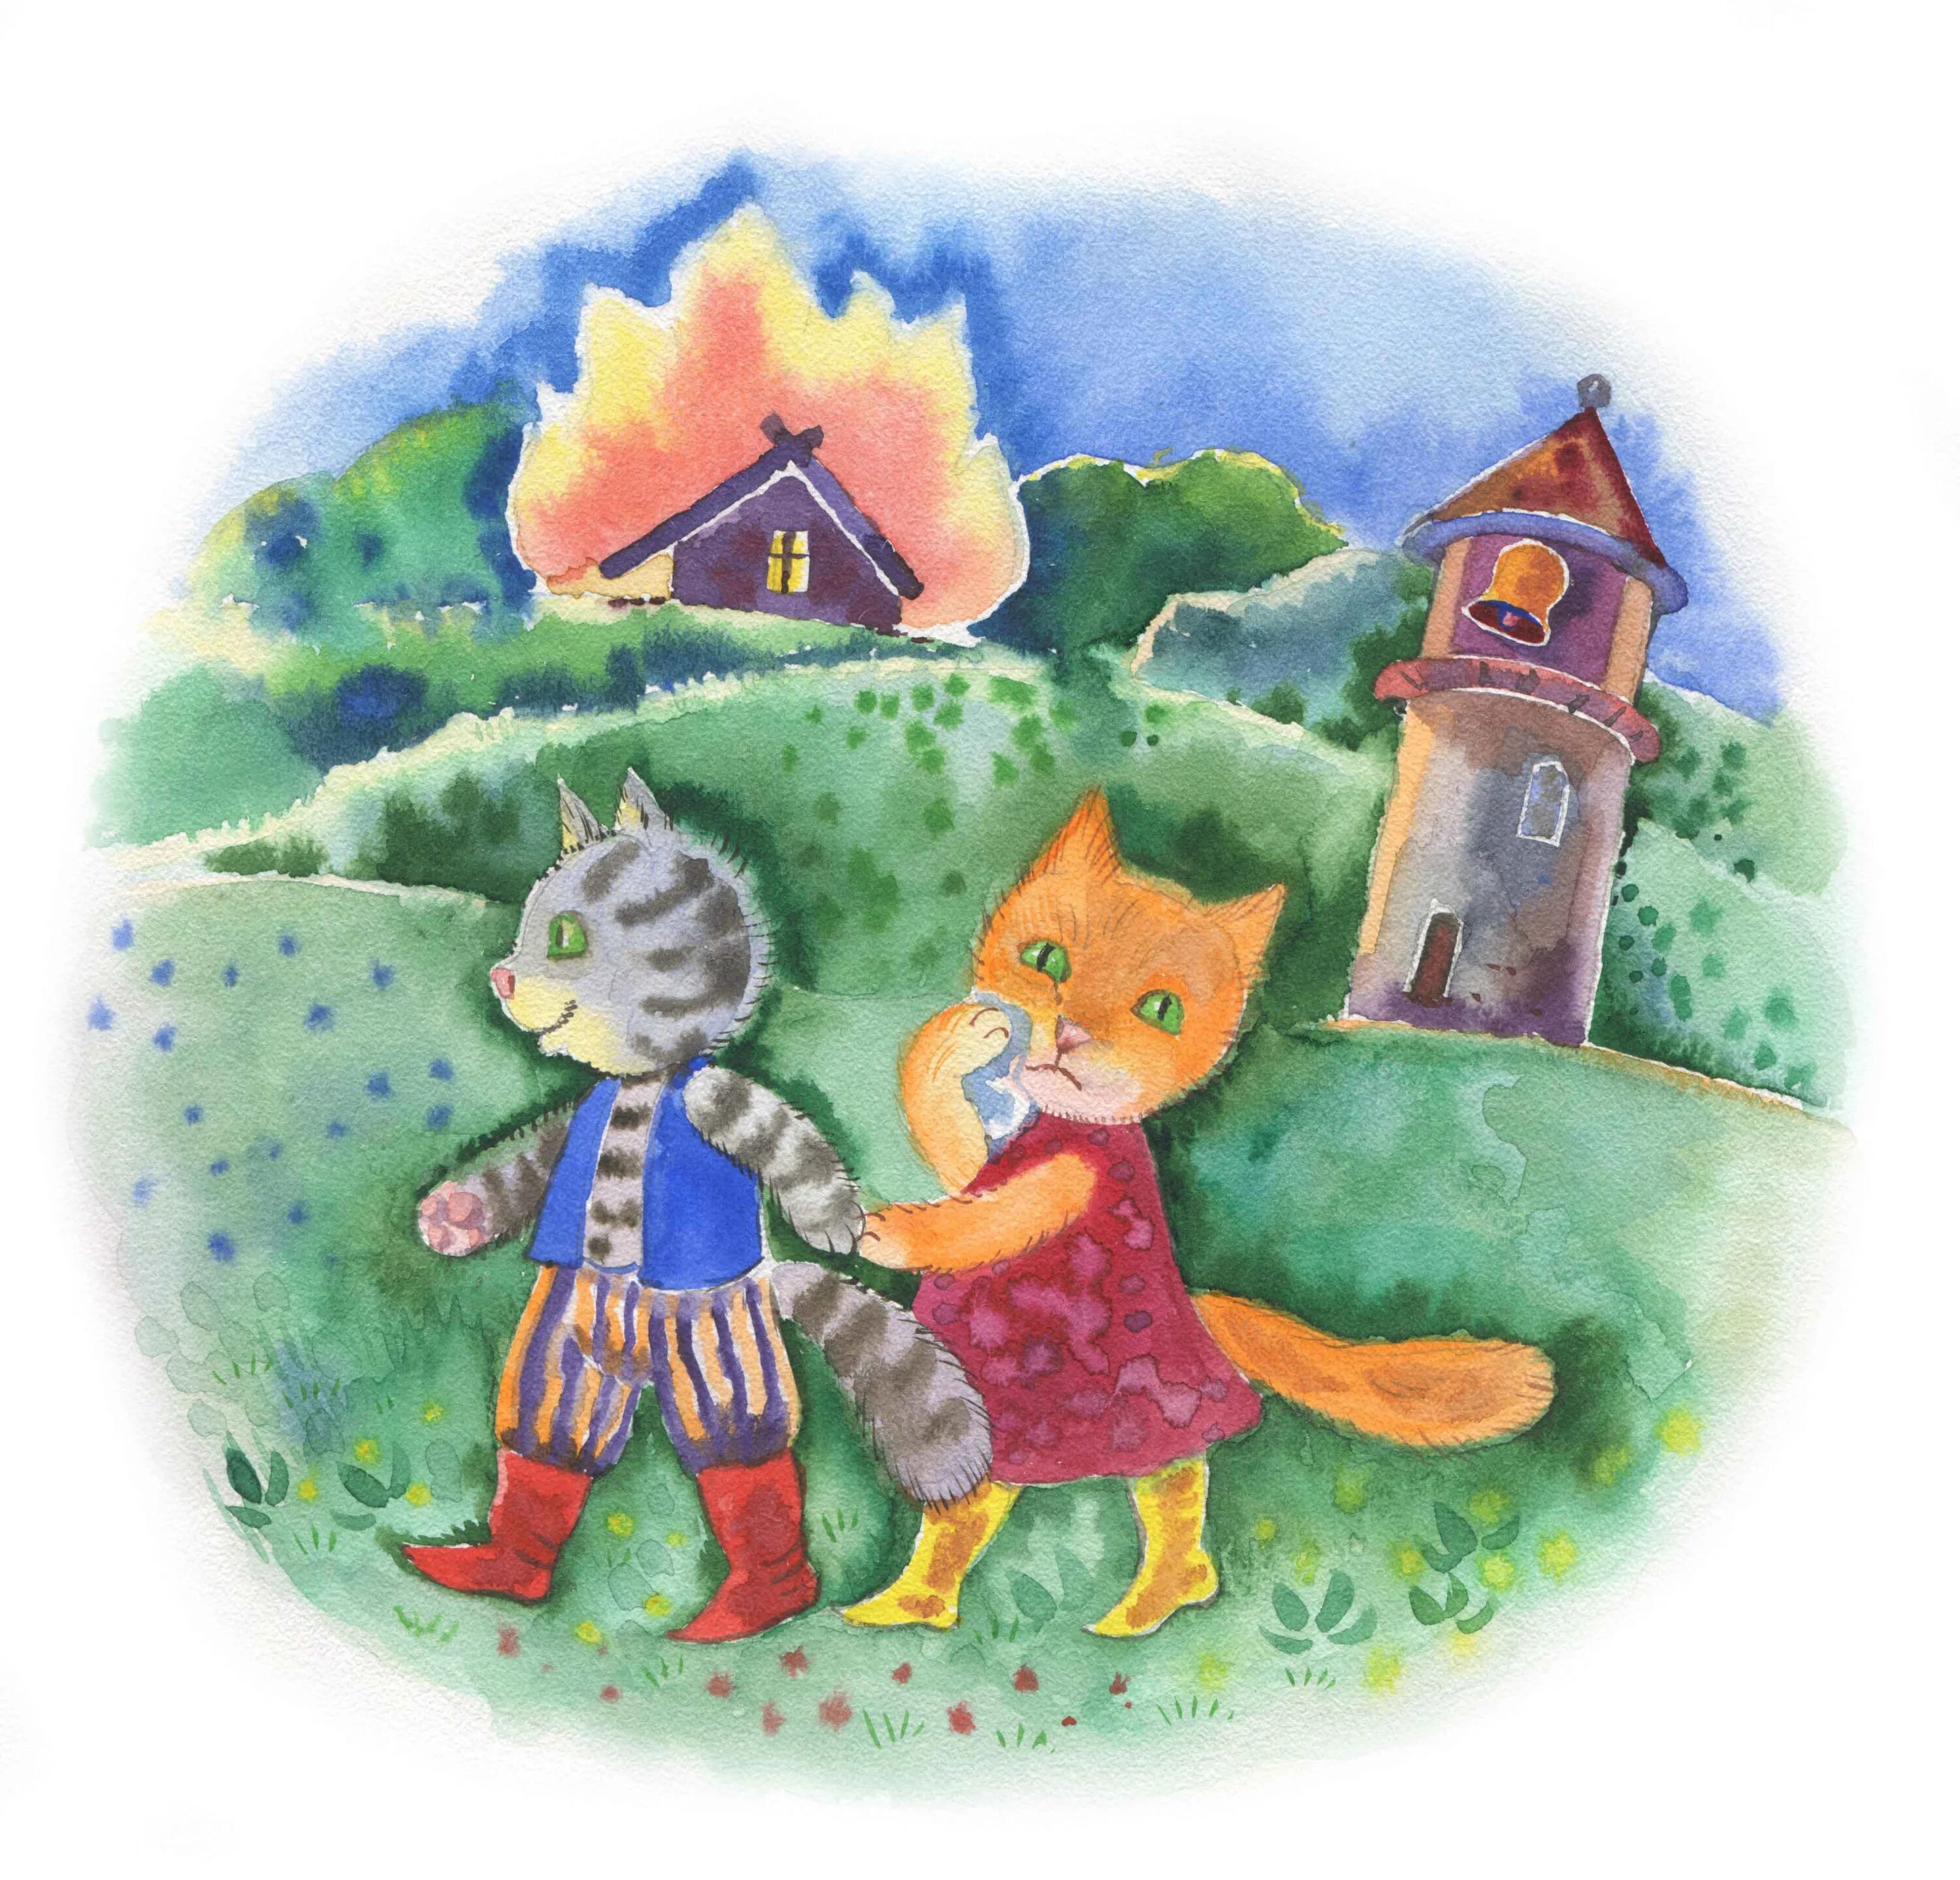 Иллюстрация к сказке кошкин дом. Кошкин дом иллюстрации. Кошкин дом рисунок. Кошкин дом картинки для детей. Кошкин дом иллюстрации к сказке.